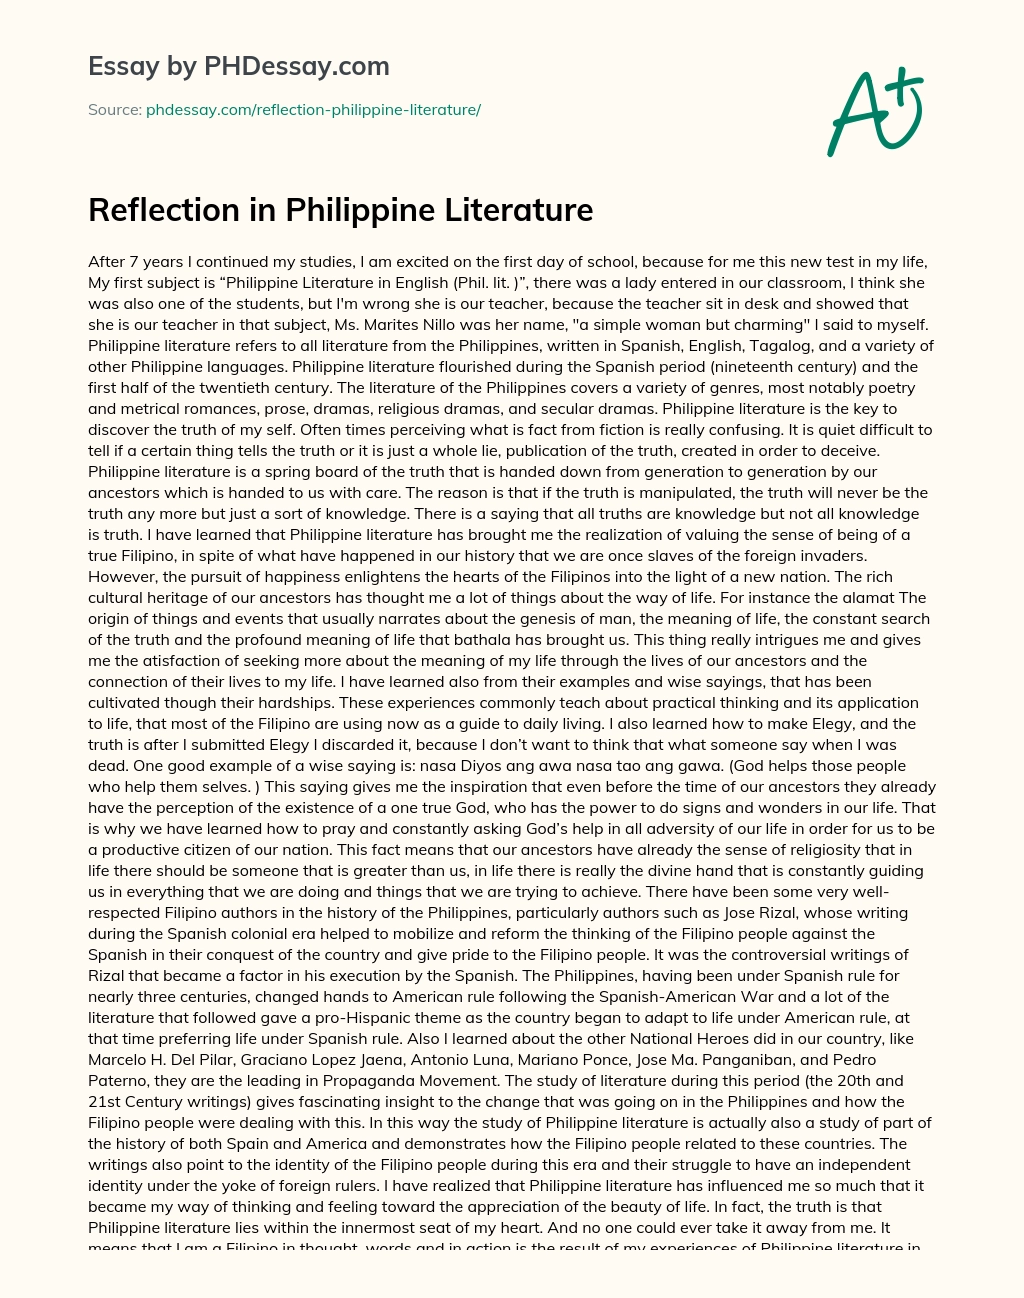 Reflection in Philippine Literature essay